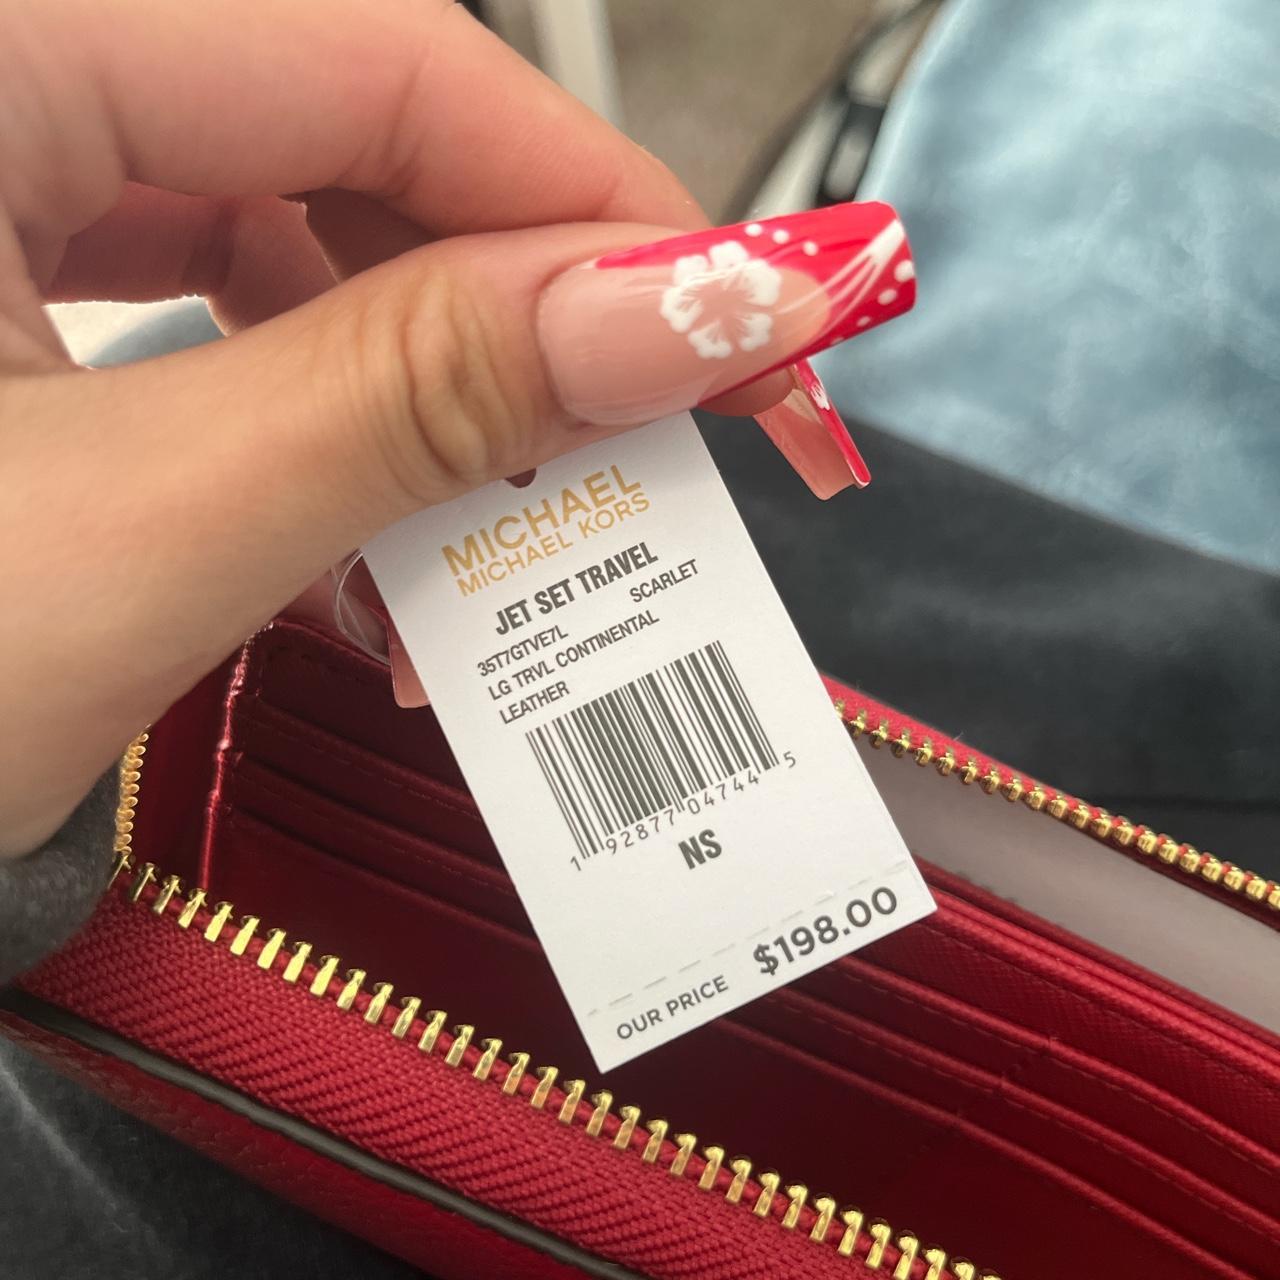 Michael Kors Jet Set Travel Large Phone Wristlet Scarlet Red Leather Wallet  